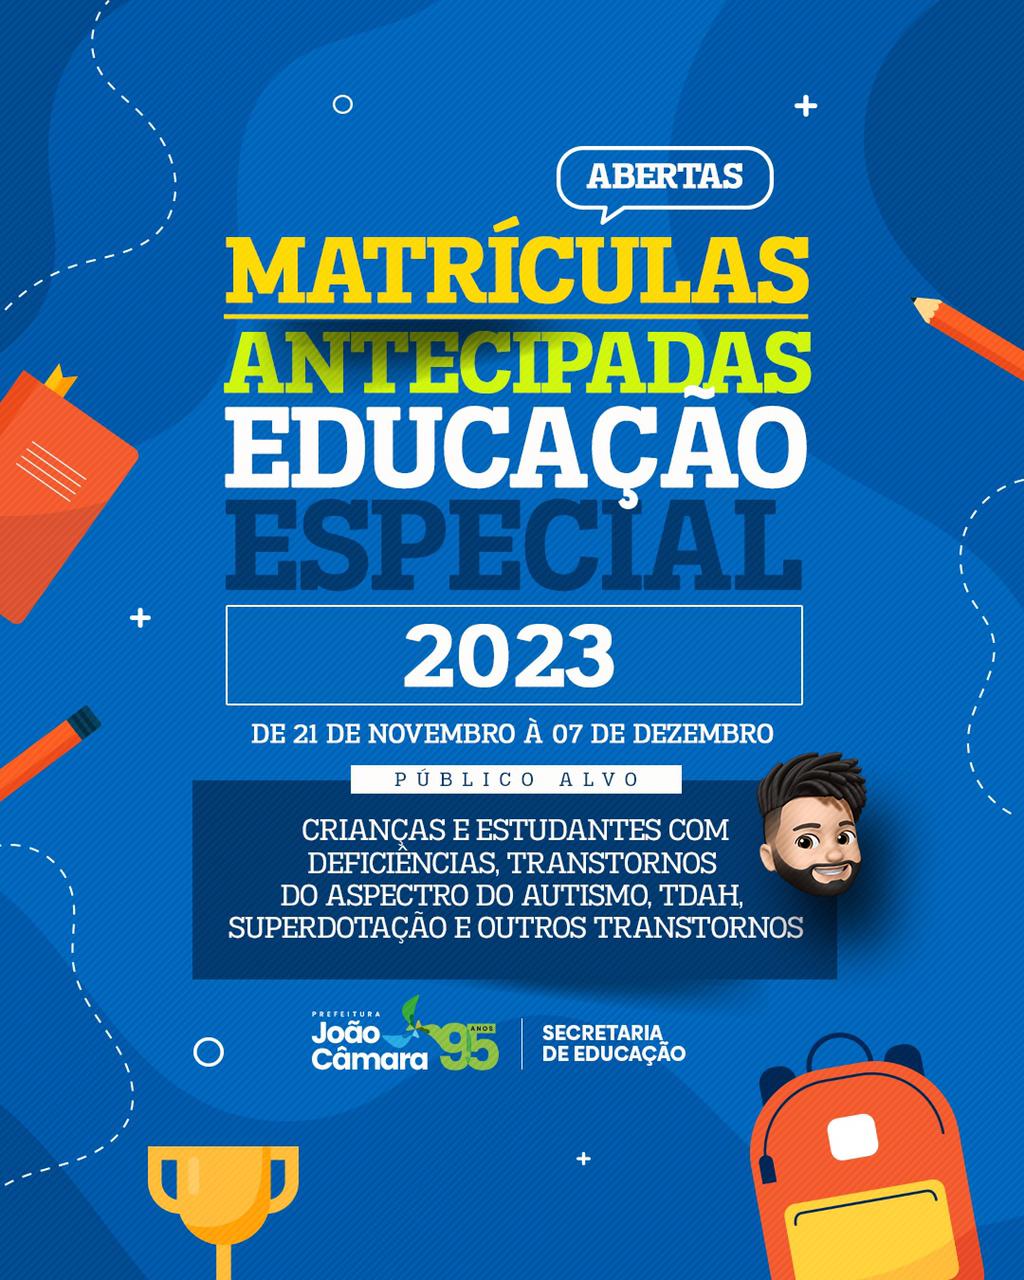 Matrículas antecipadas educação especial 2023